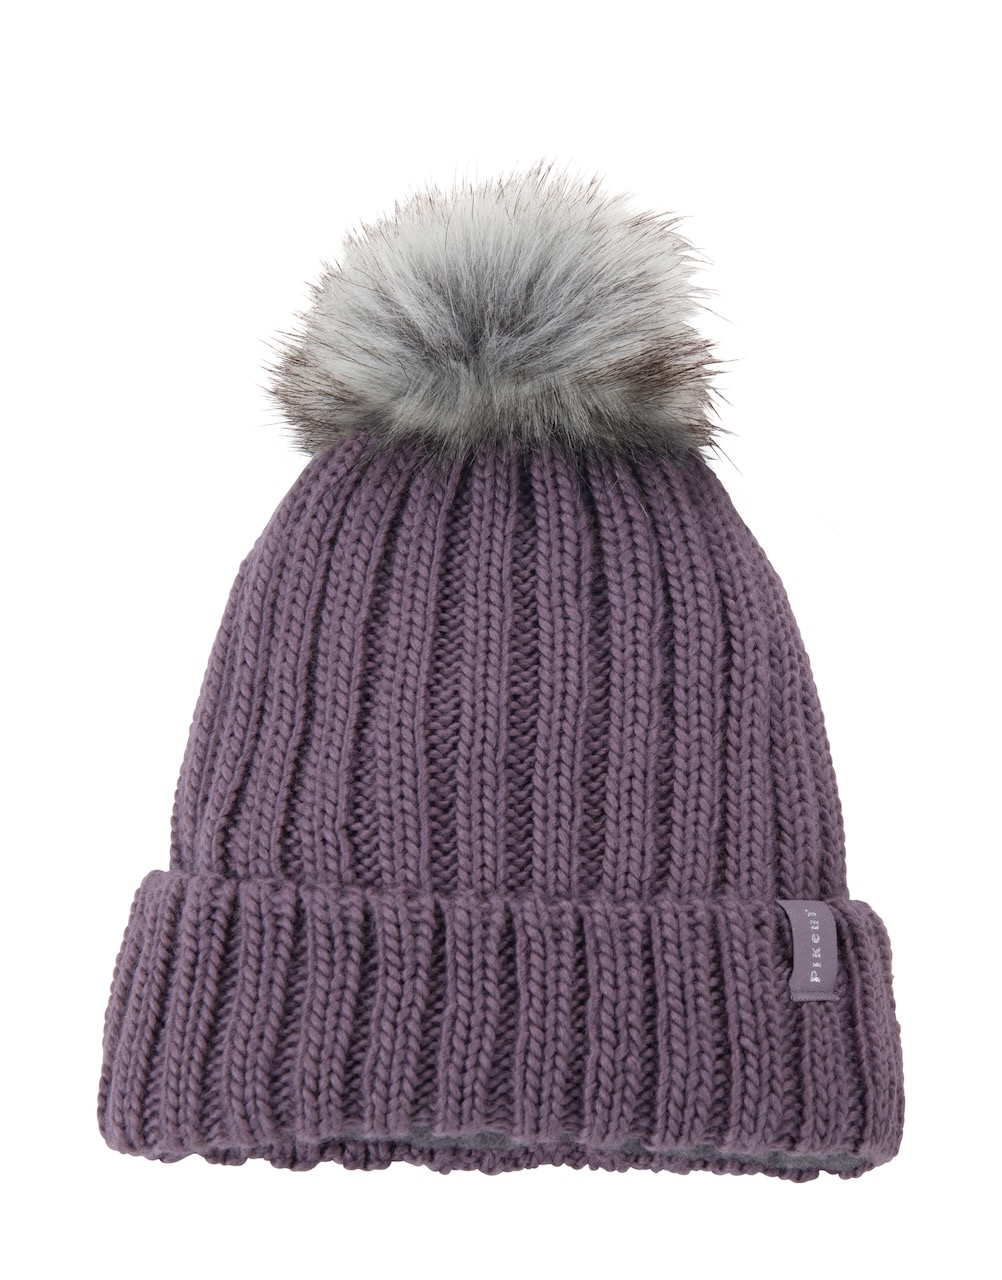 Mütze, H/W 22, purple grey